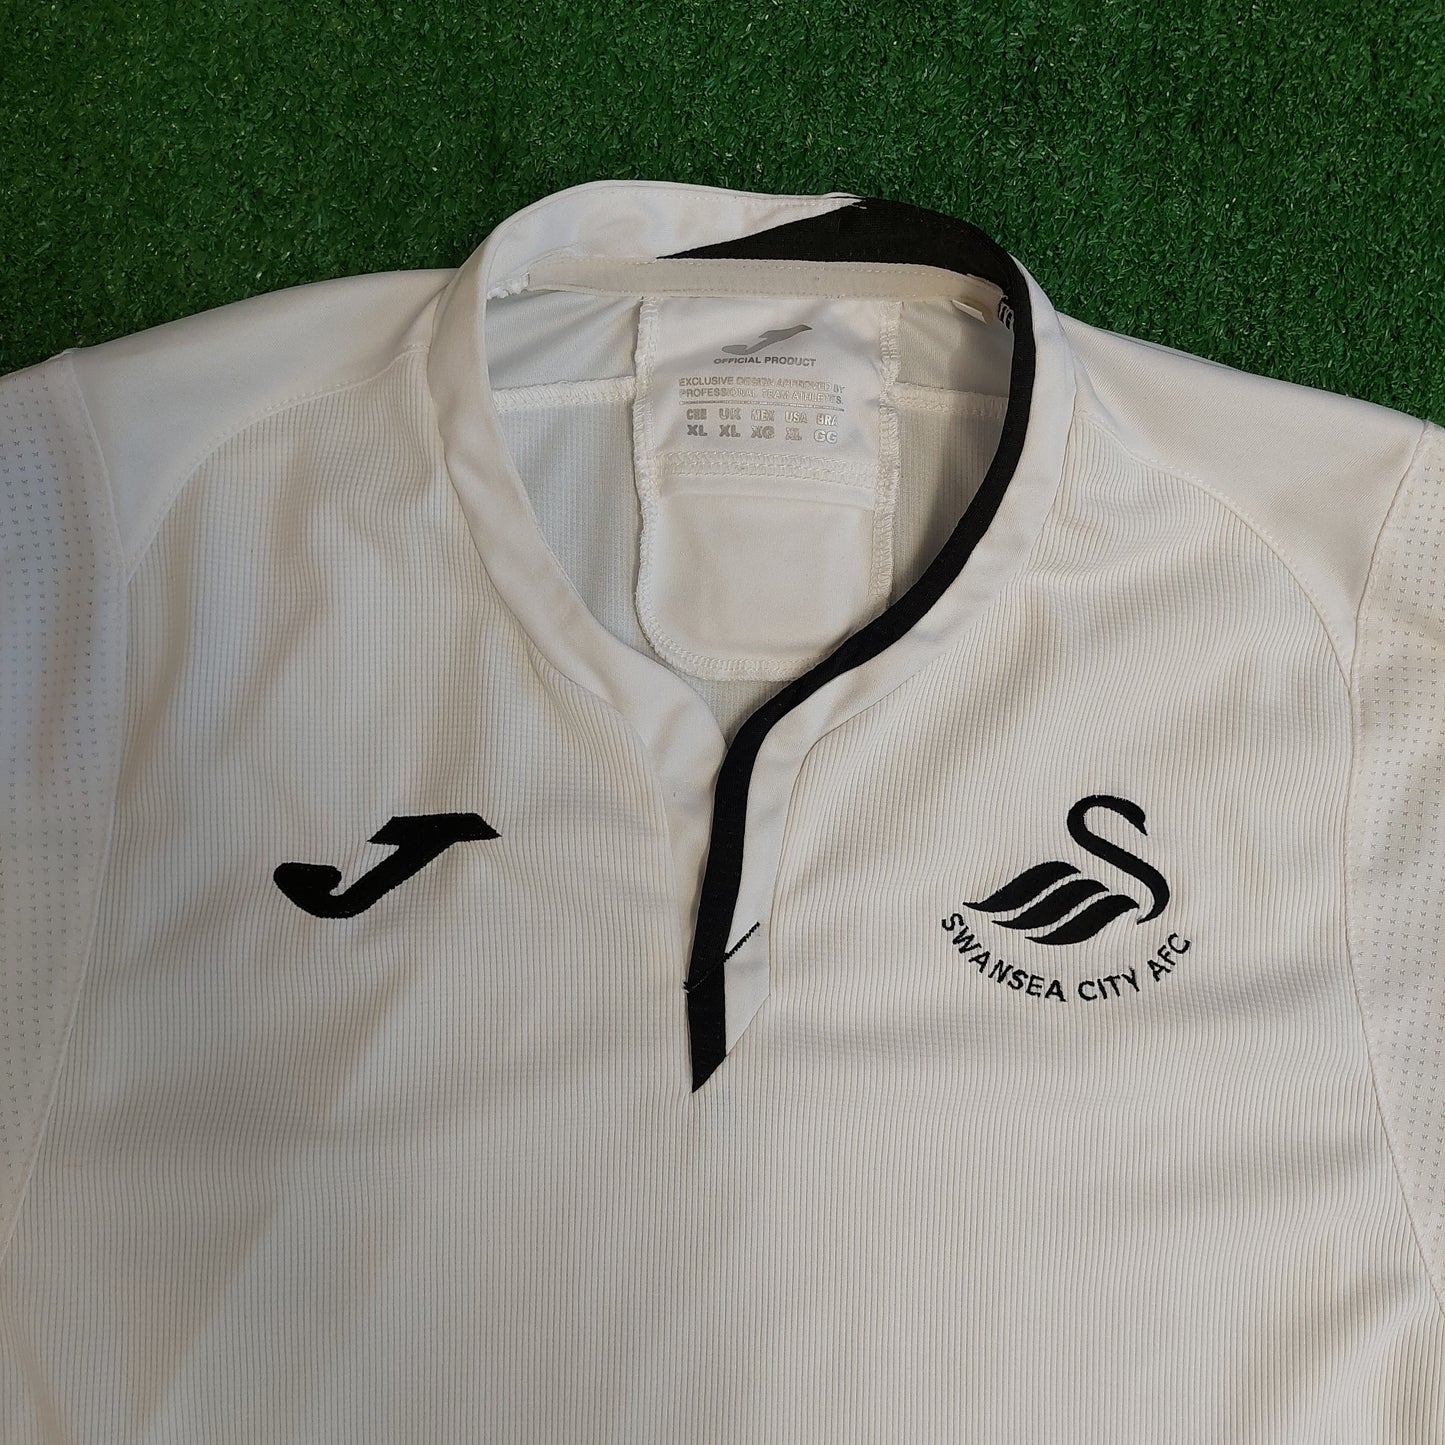 Swansea City 2018/19 Home Shirt (Excellent) - Size XL